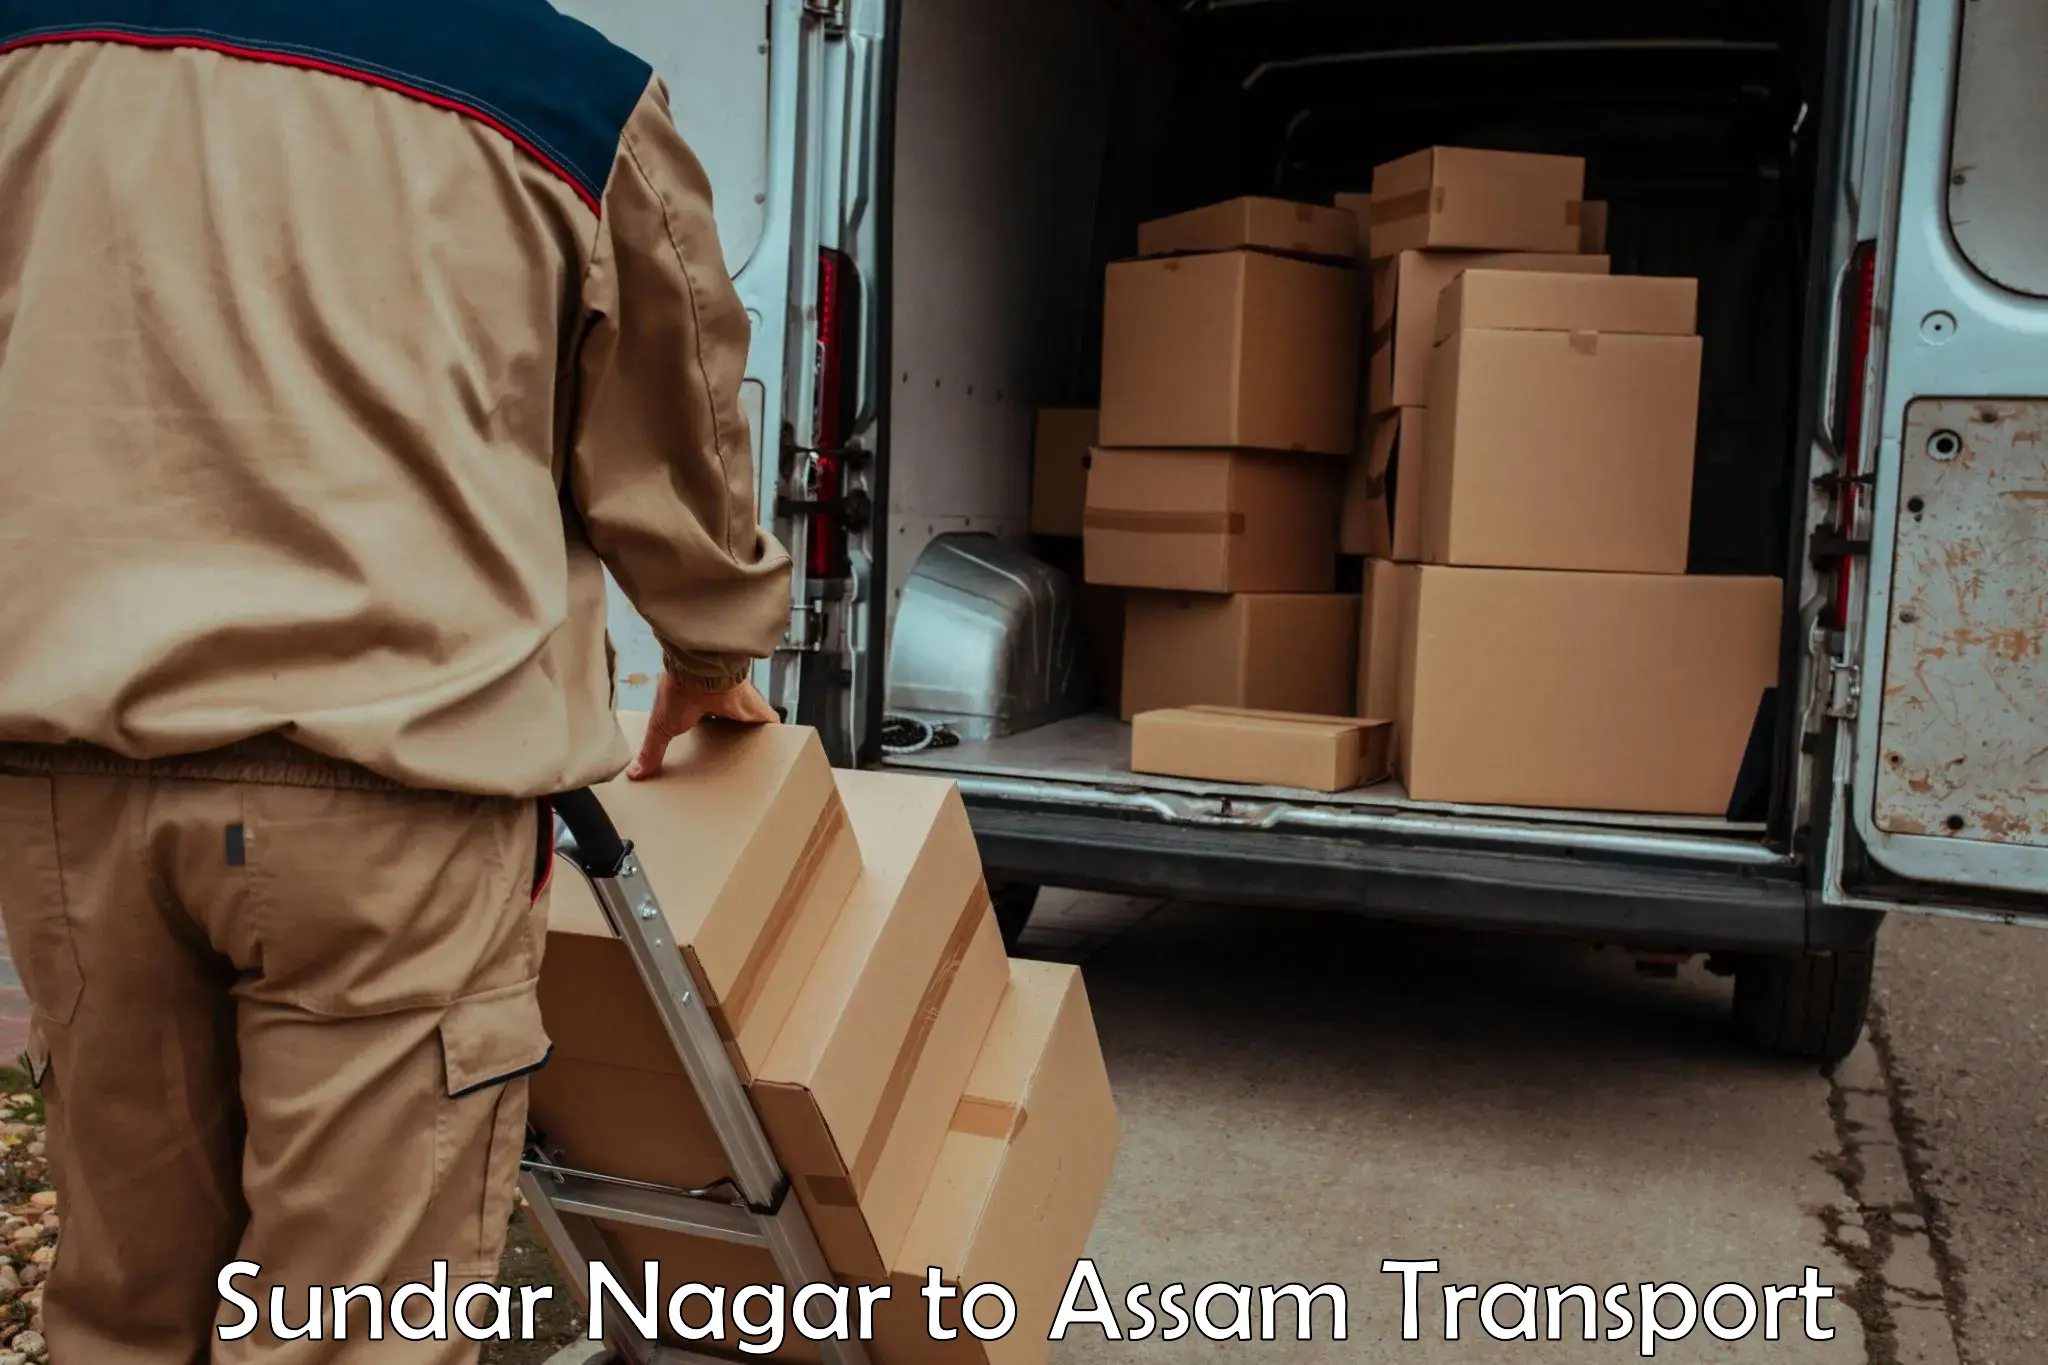 Commercial transport service Sundar Nagar to Mariani